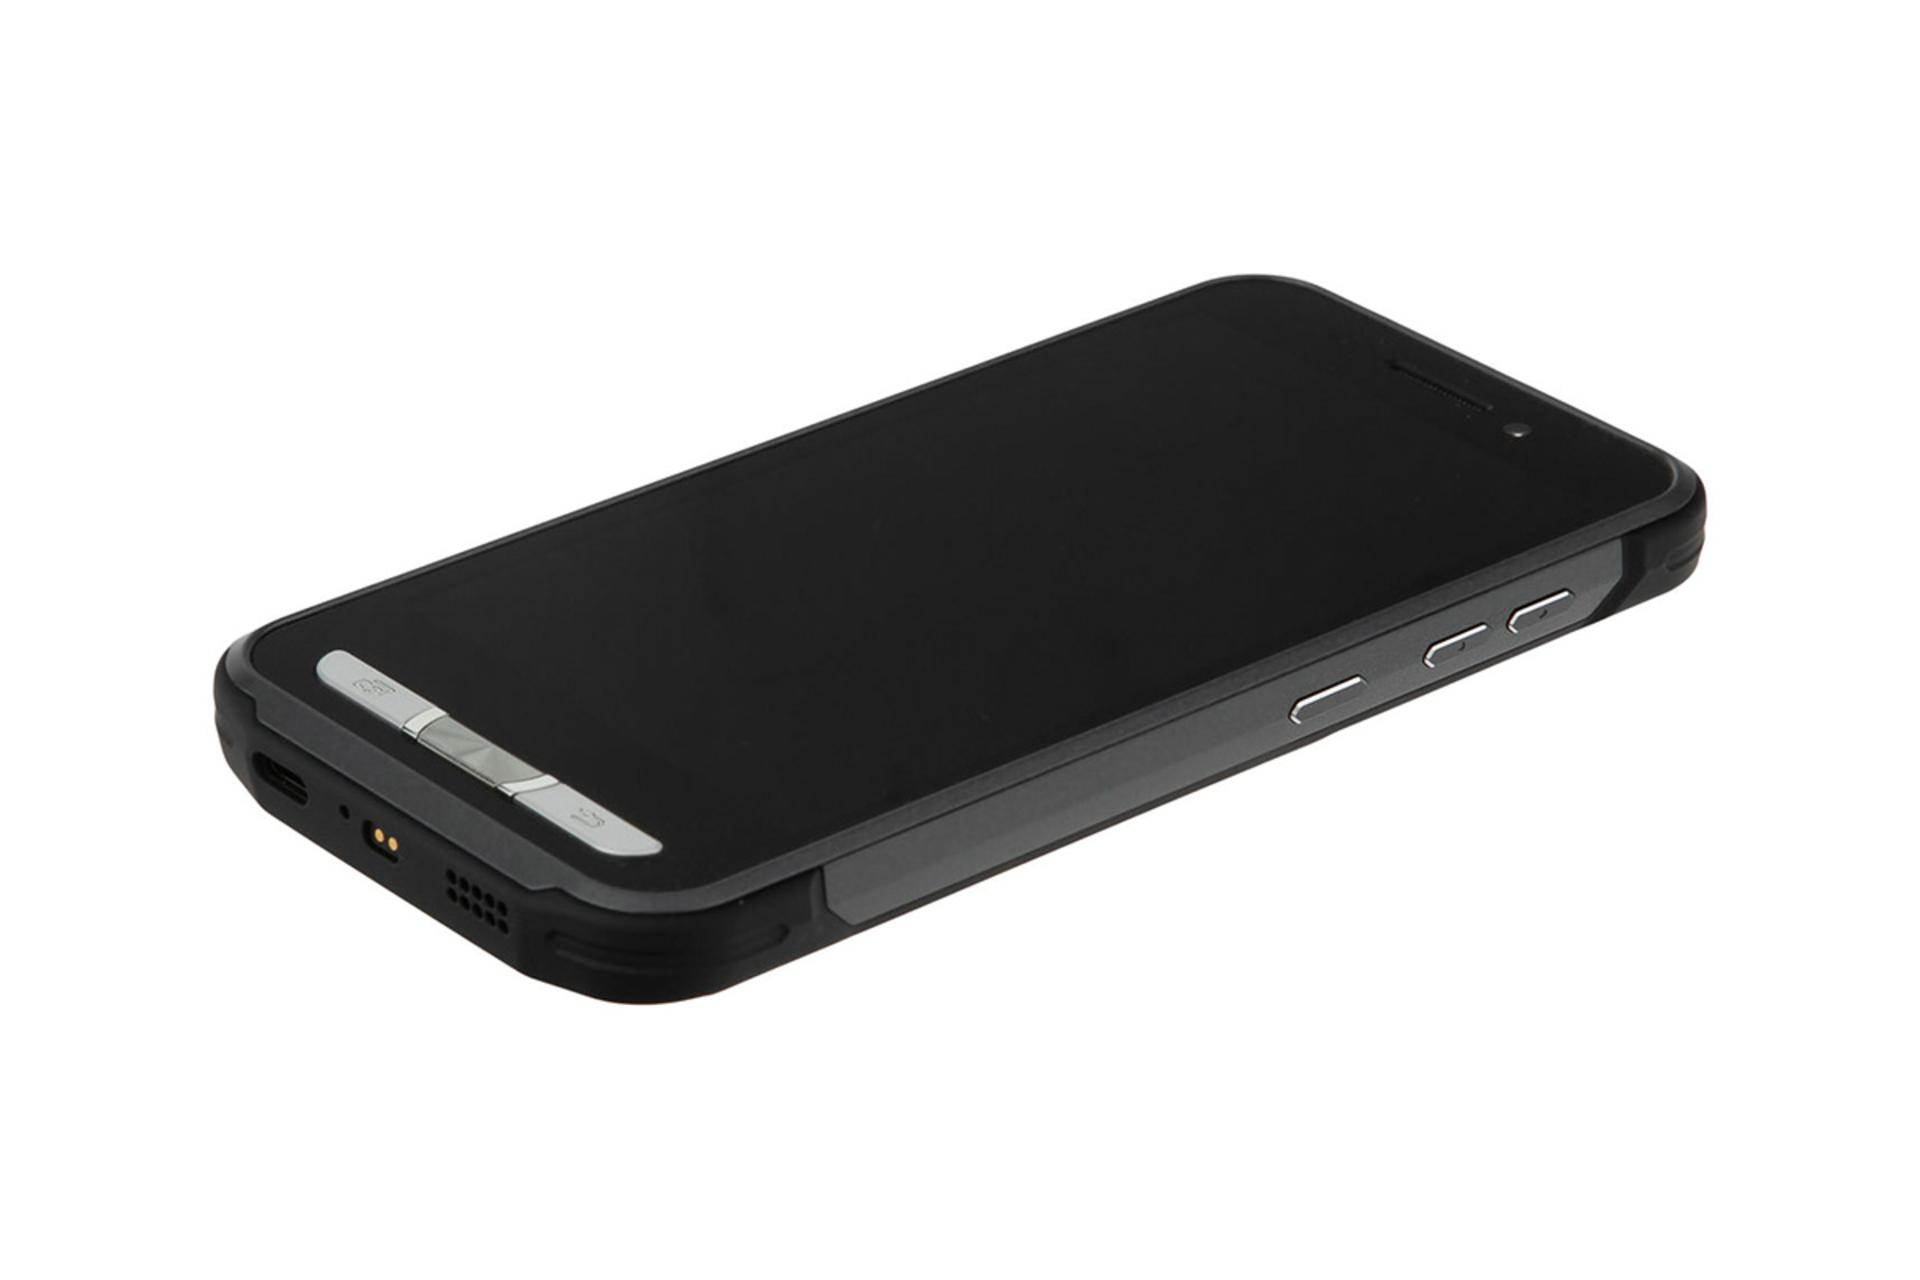 گوشی پوینت موبایل PM45 در حالت قرار گرفته روی سطح